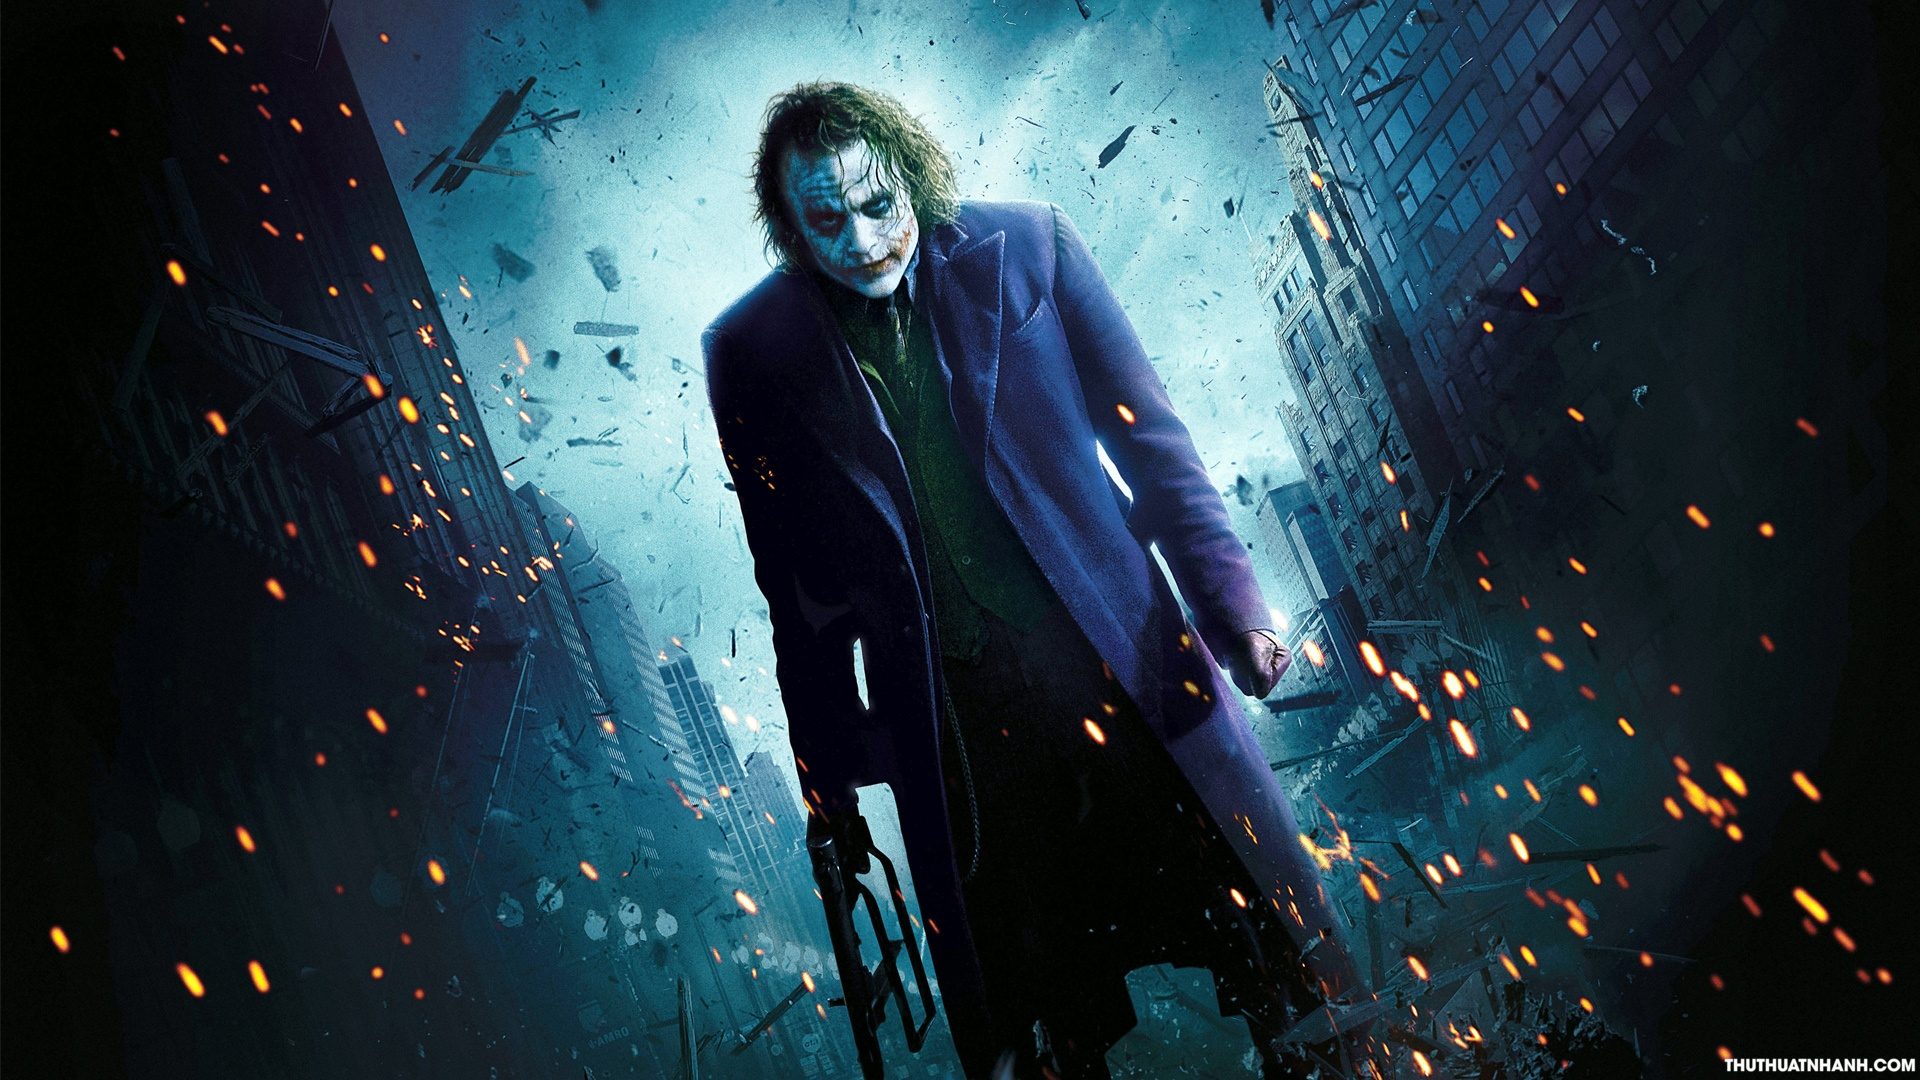 Hình Ảnh Joker Đẹp - Nhân Vật Phản Diện Được Yêu Thích Nhất